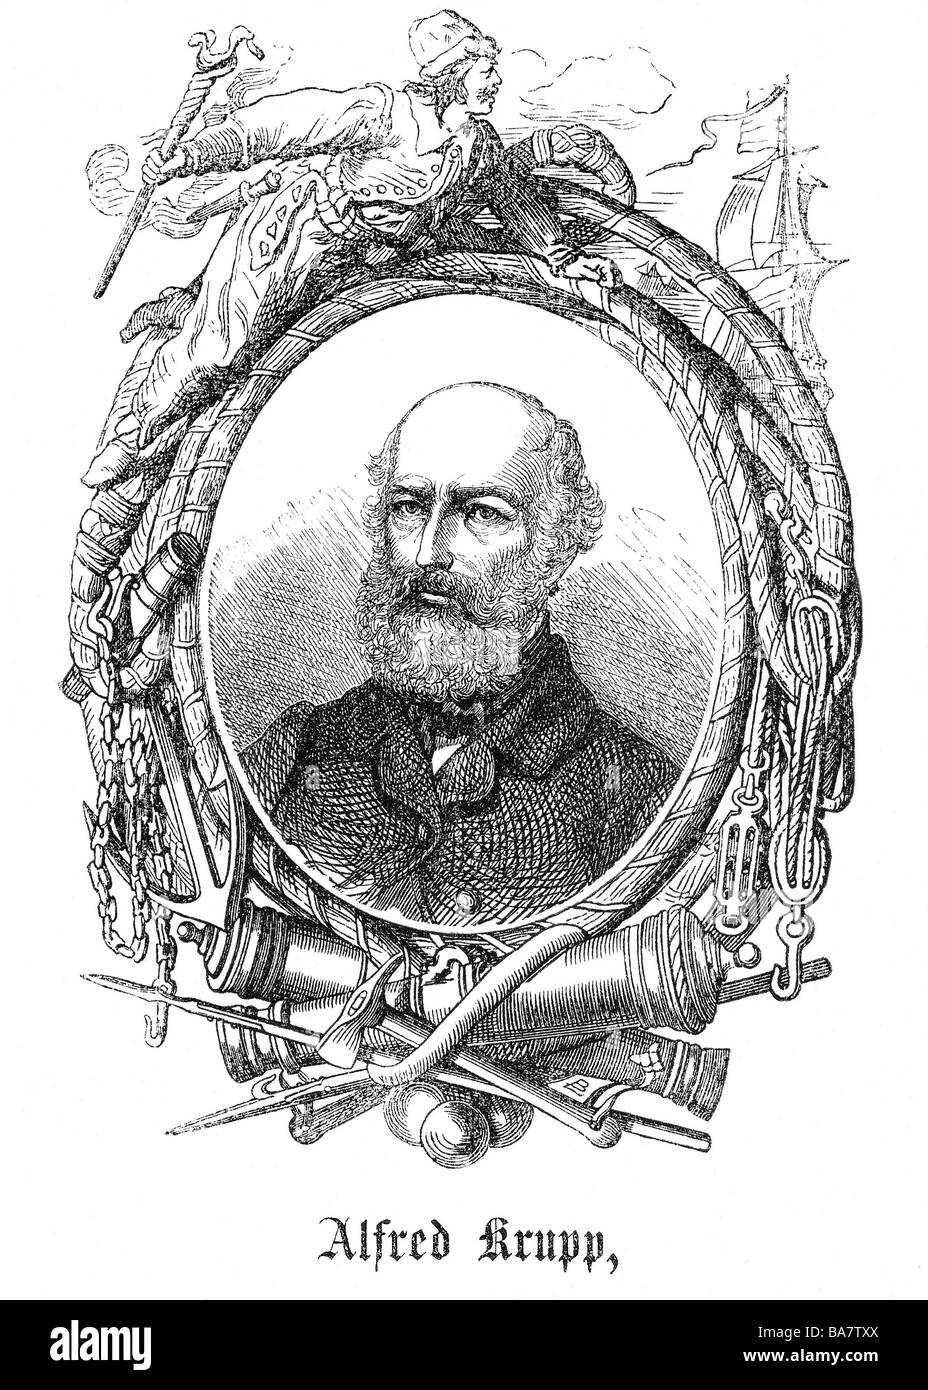 Krupp, Alfred, 11.4.1812 - 14 7.1887, industriel allemand, portrait avec bordure allégorique, gravure sur bois, vers 1880, Banque D'Images